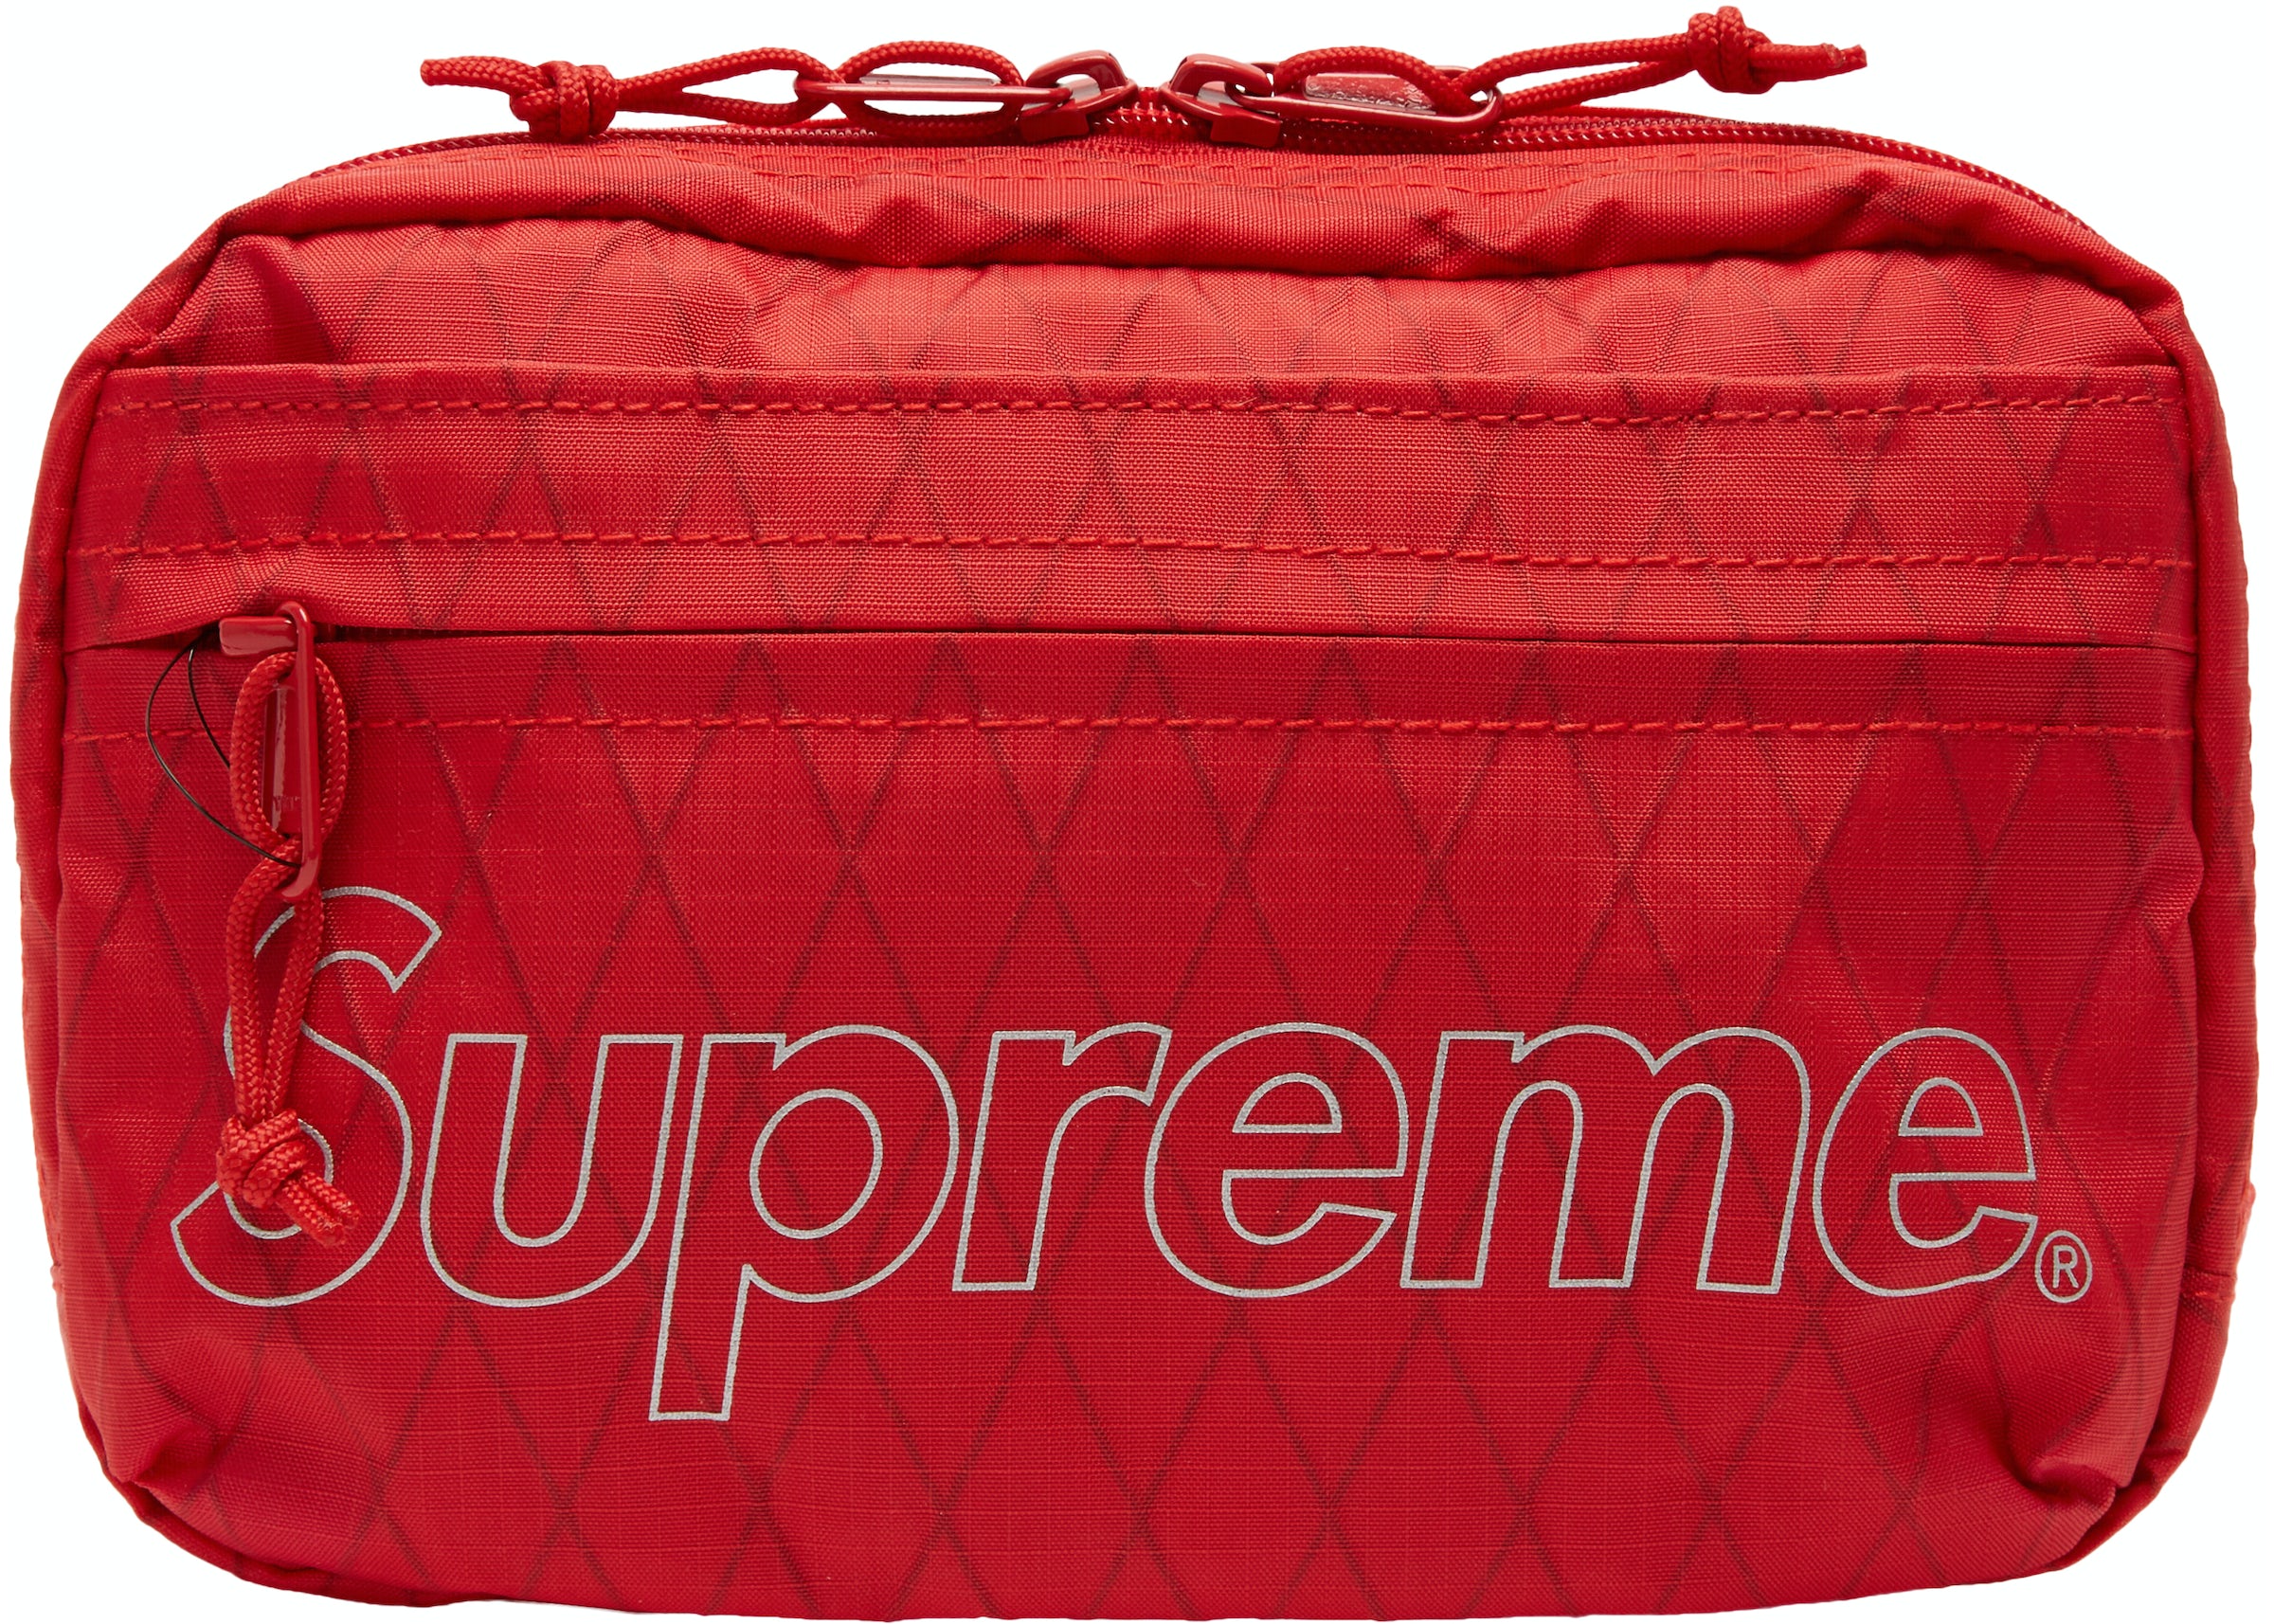 Supreme Shoulder Bag Red (FW18)